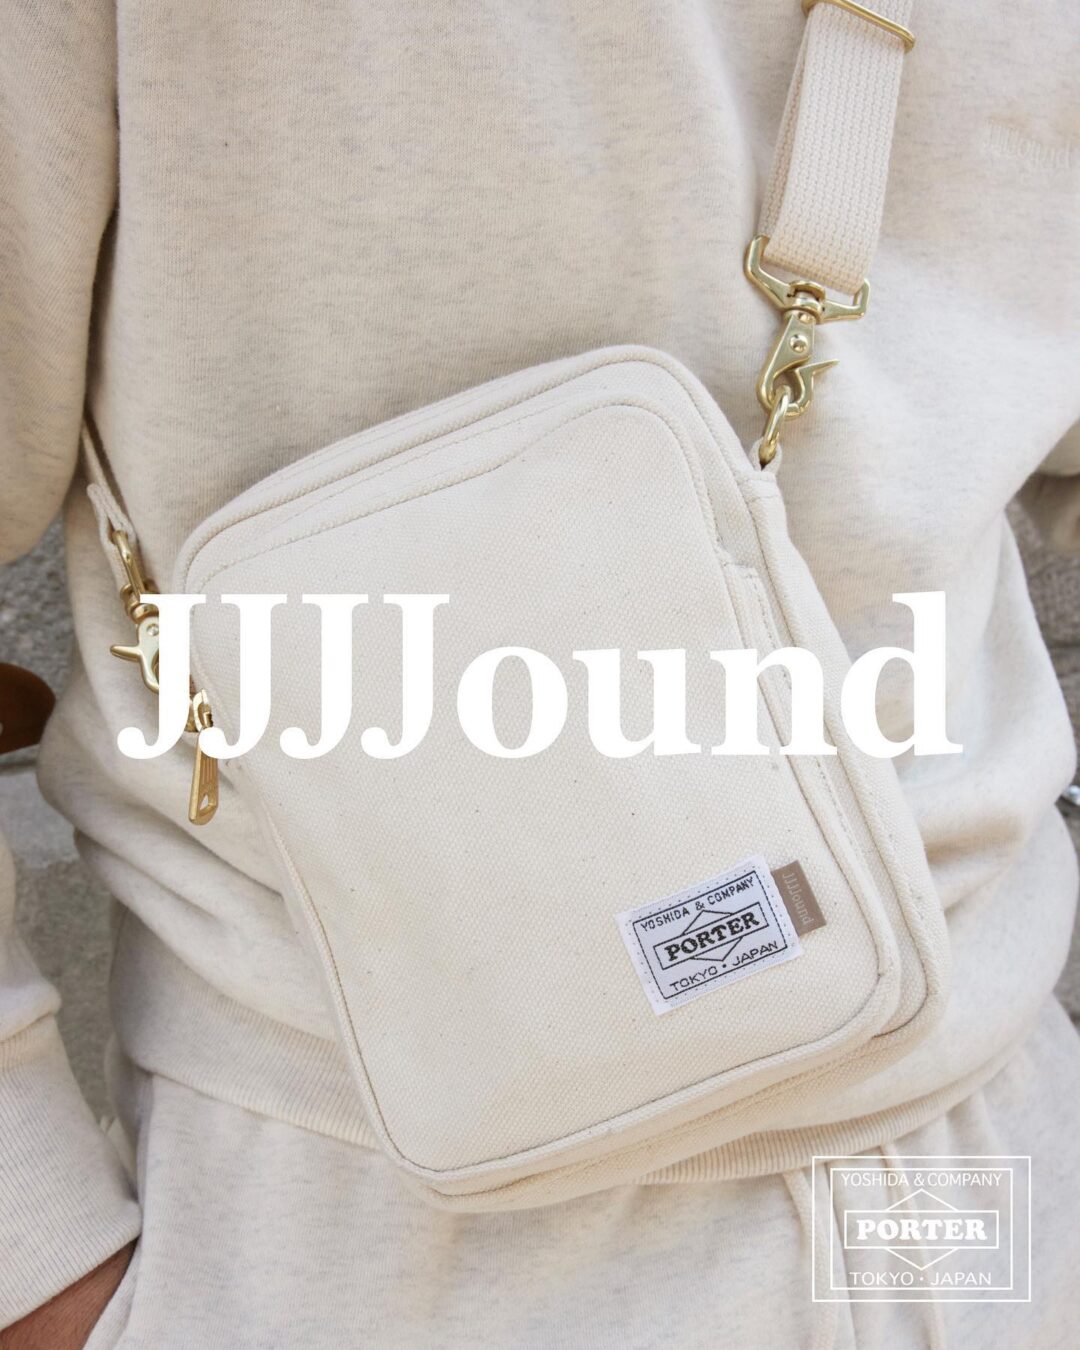 【国内 3/31 発売】JJJJound × PORTER コラボ 第3弾 (ジョウンド ポーター)